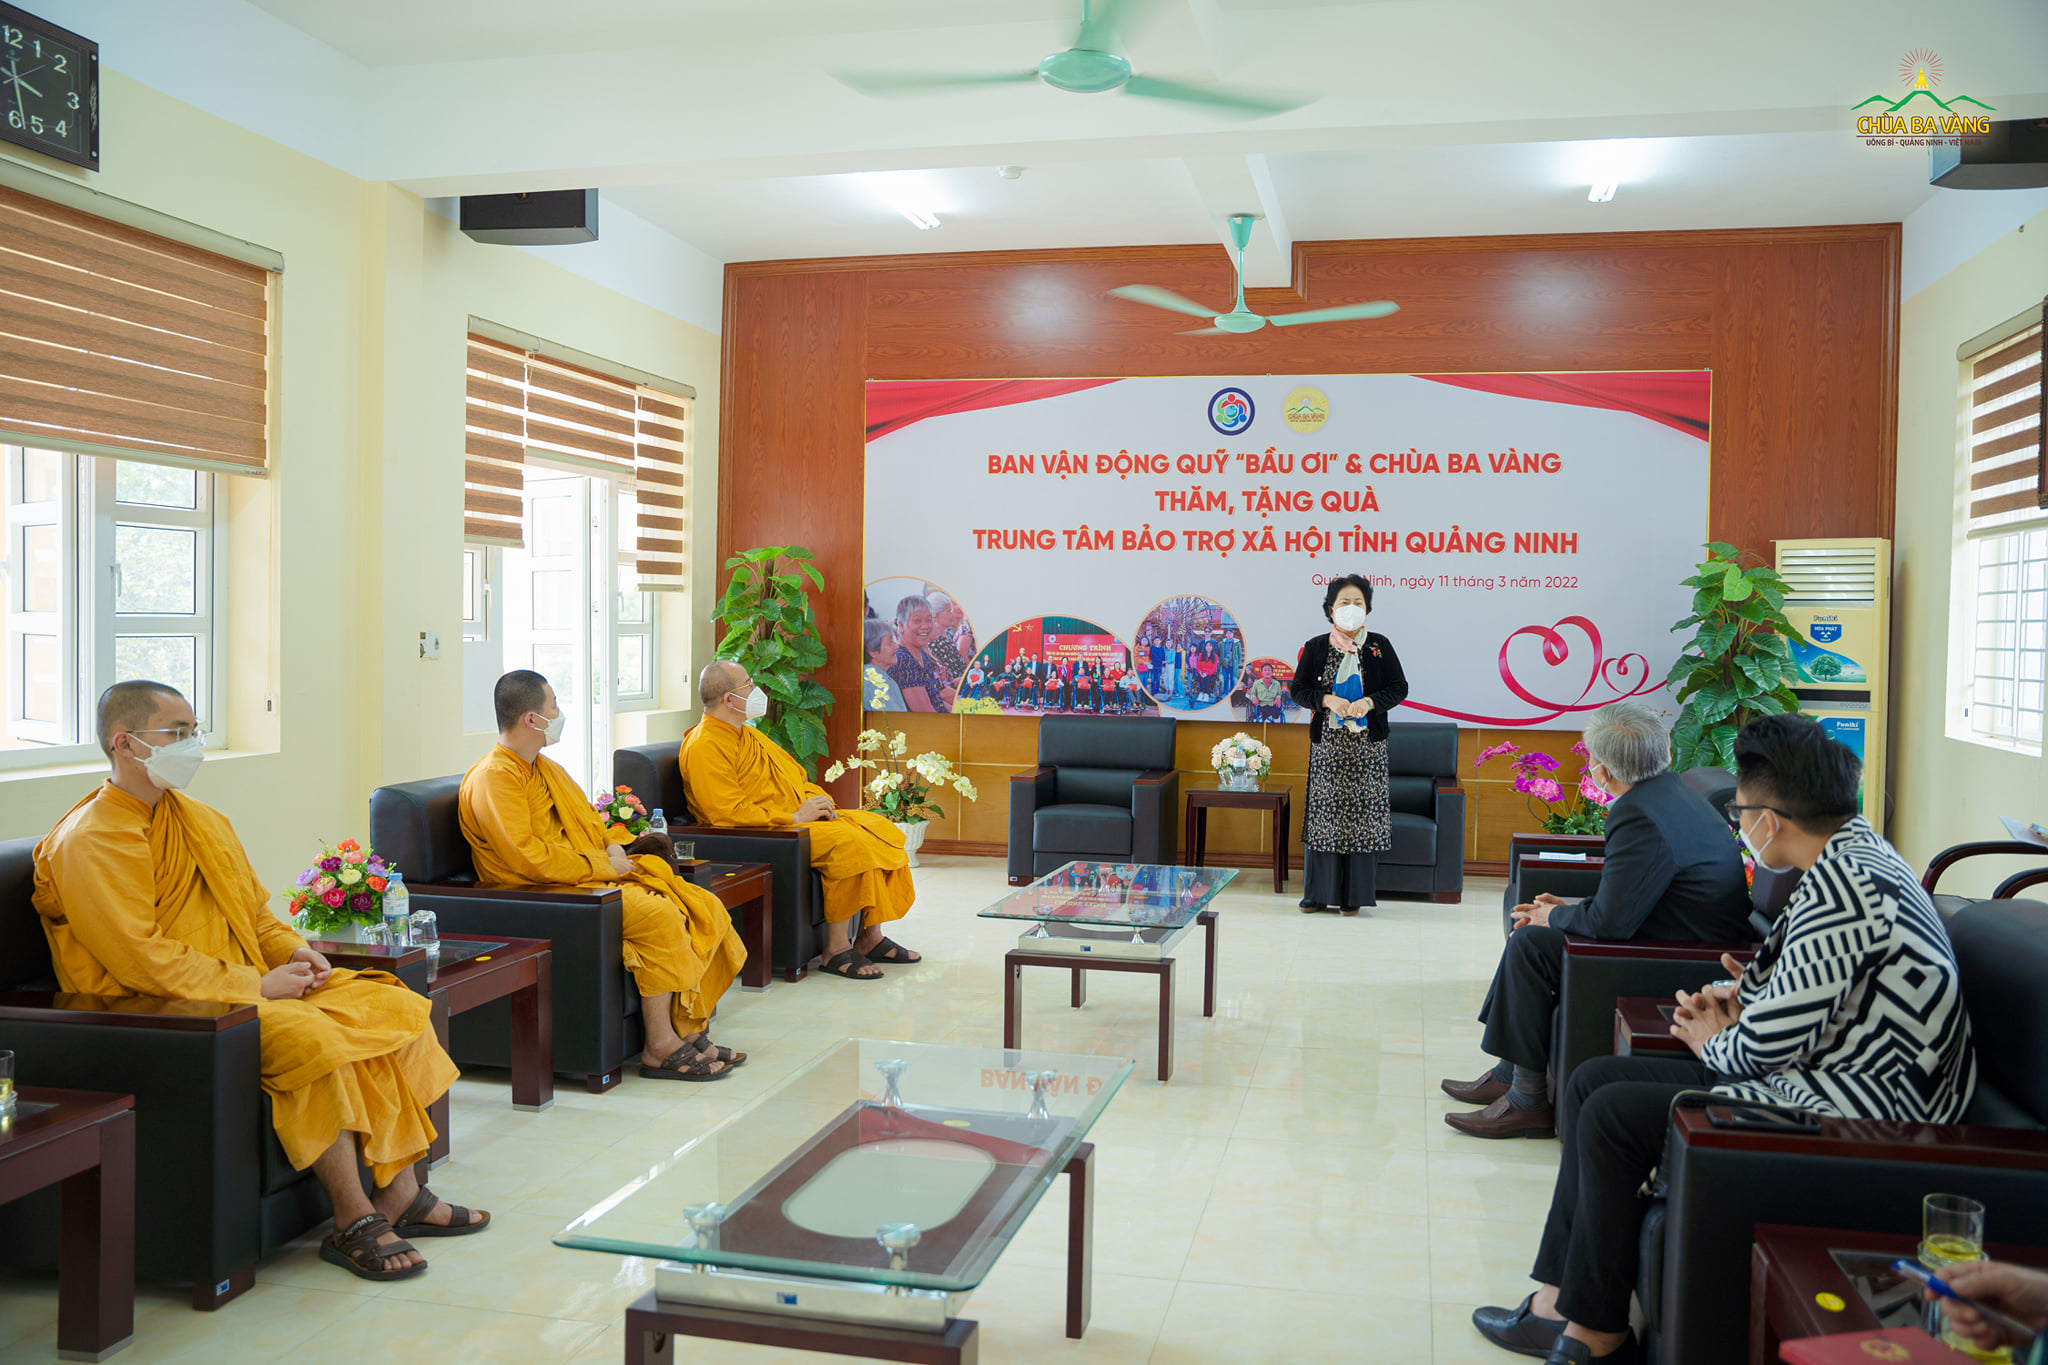 Bà Trương Tuyết Nhung - trưởng Ban Vận động quỹ “Bầu ơi” phát biểu tại buổi trao tặng